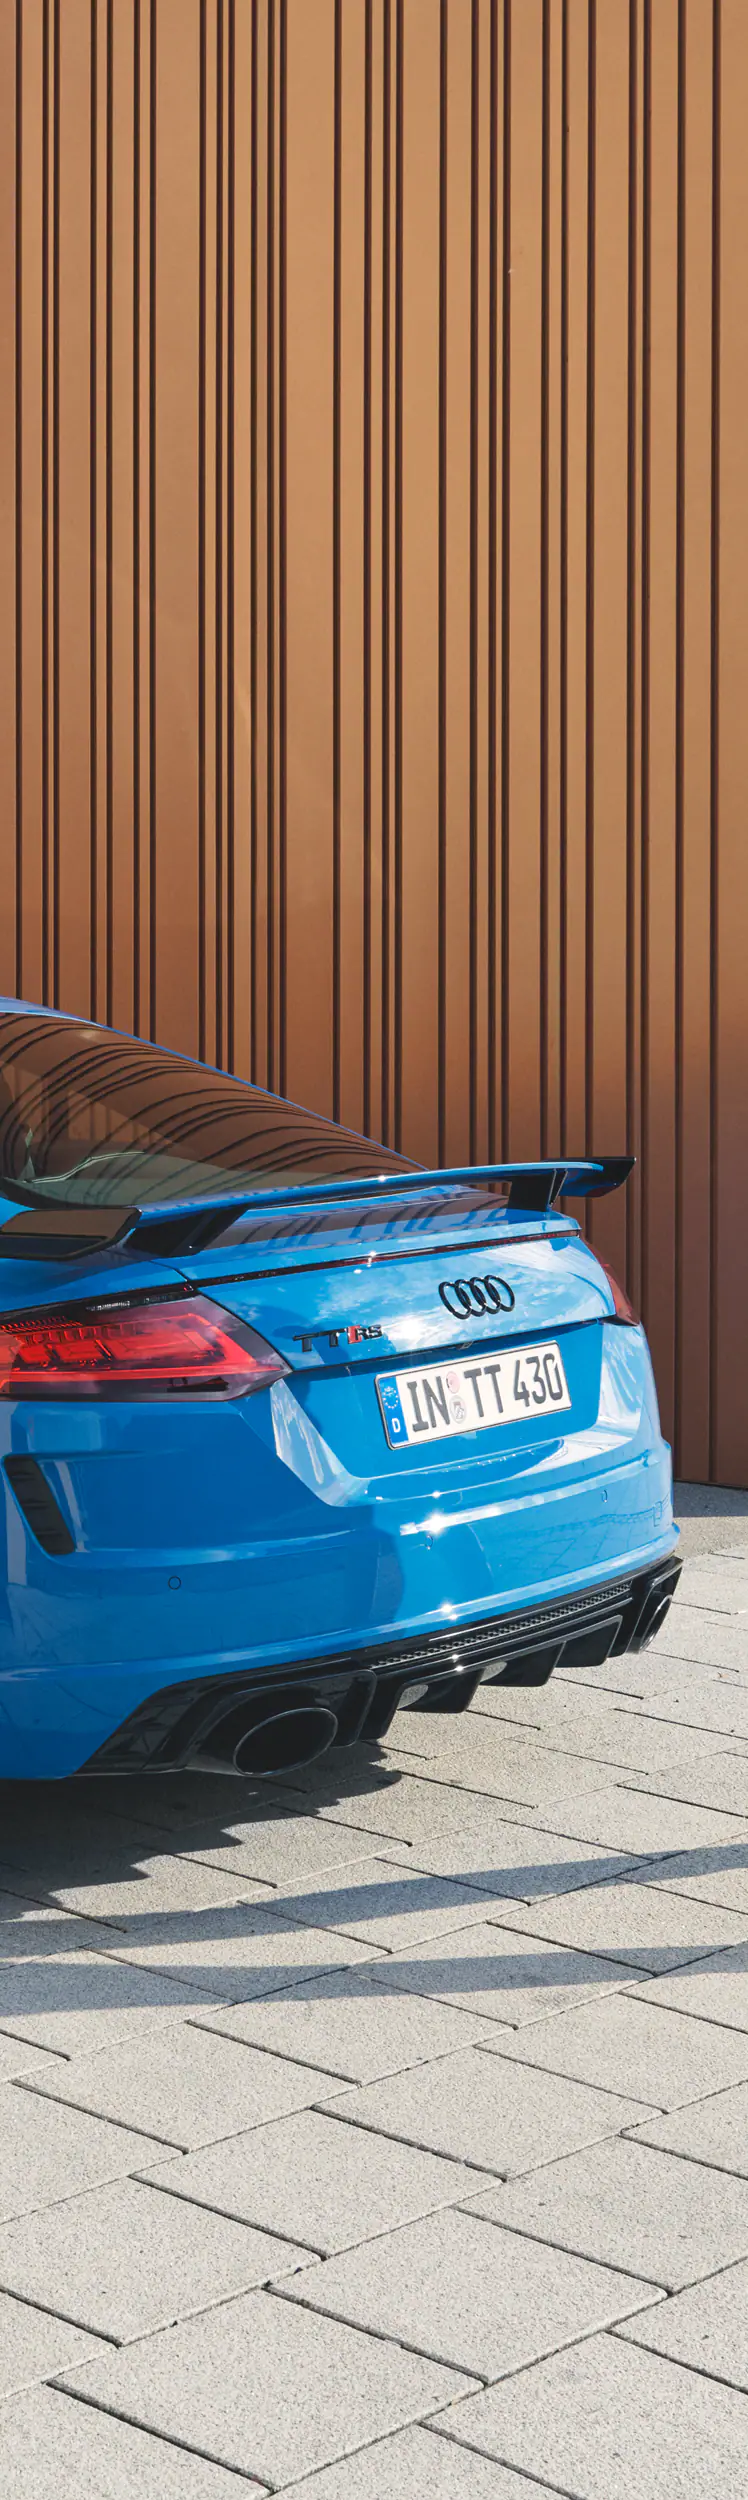 Audi TT RS Coupé seitliche Heckansicht